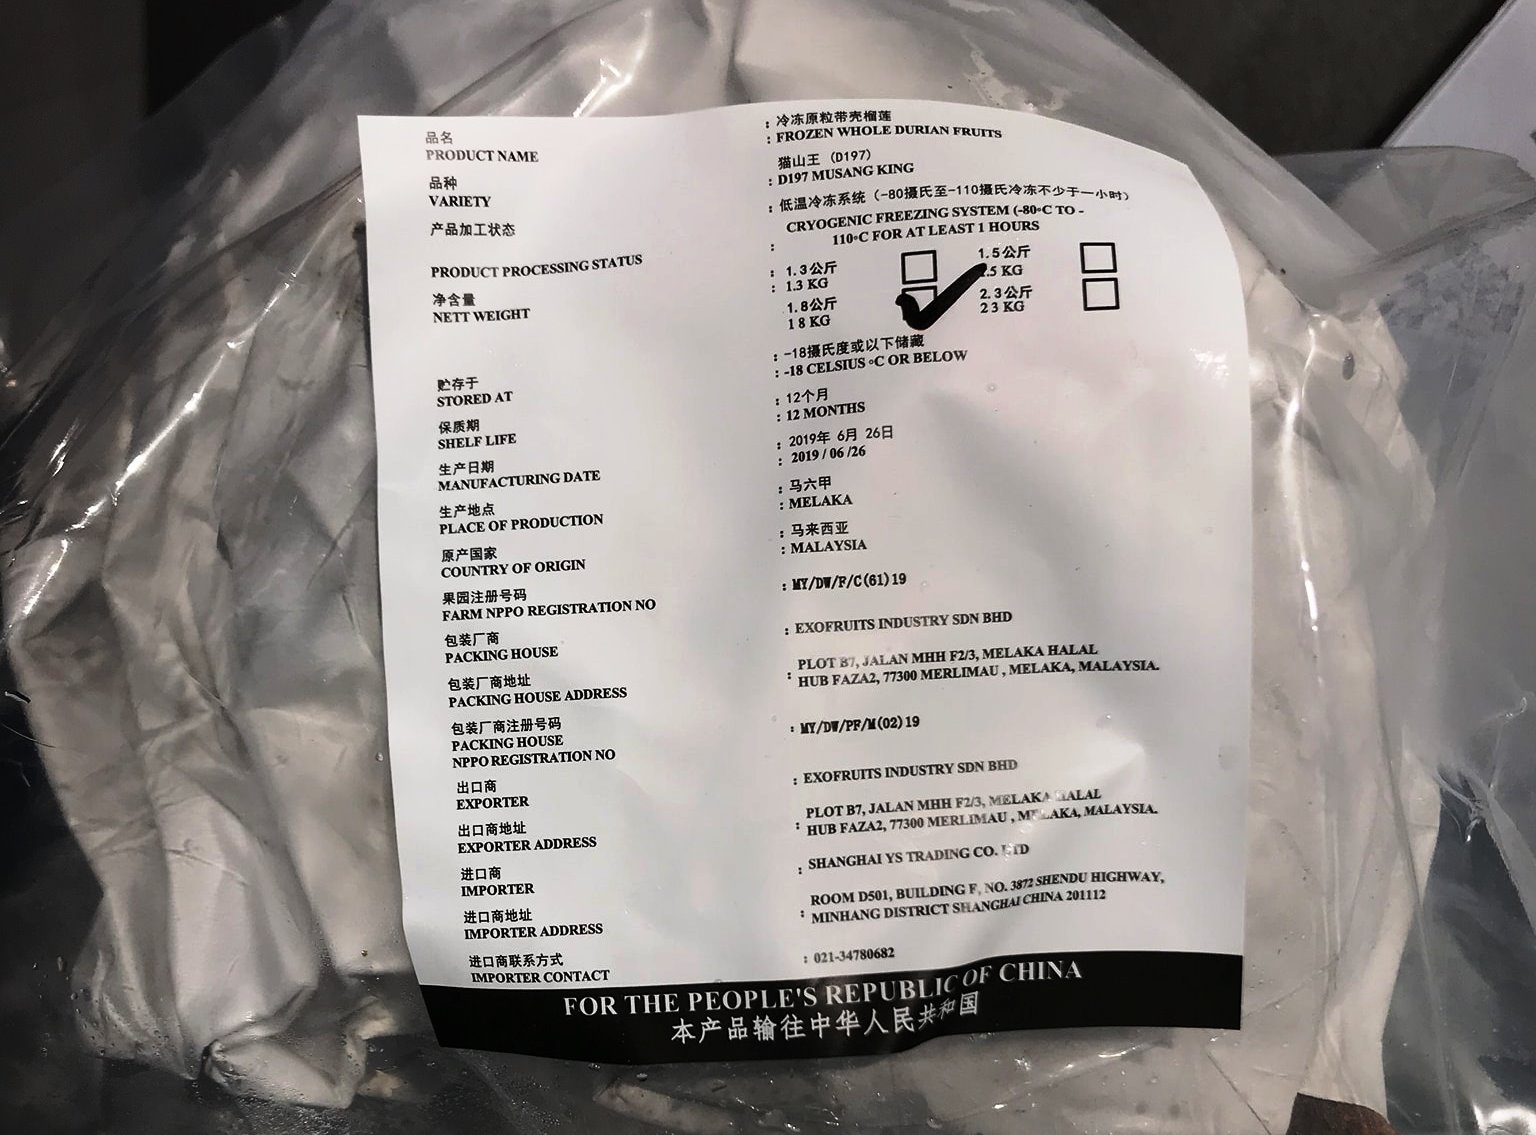 白天大使购买了1.8公斤的急冻猫山王榴莲，同时包装上也有注明是来自马六甲的公司进口。-摘自中国驻马大使馆脸书专页-